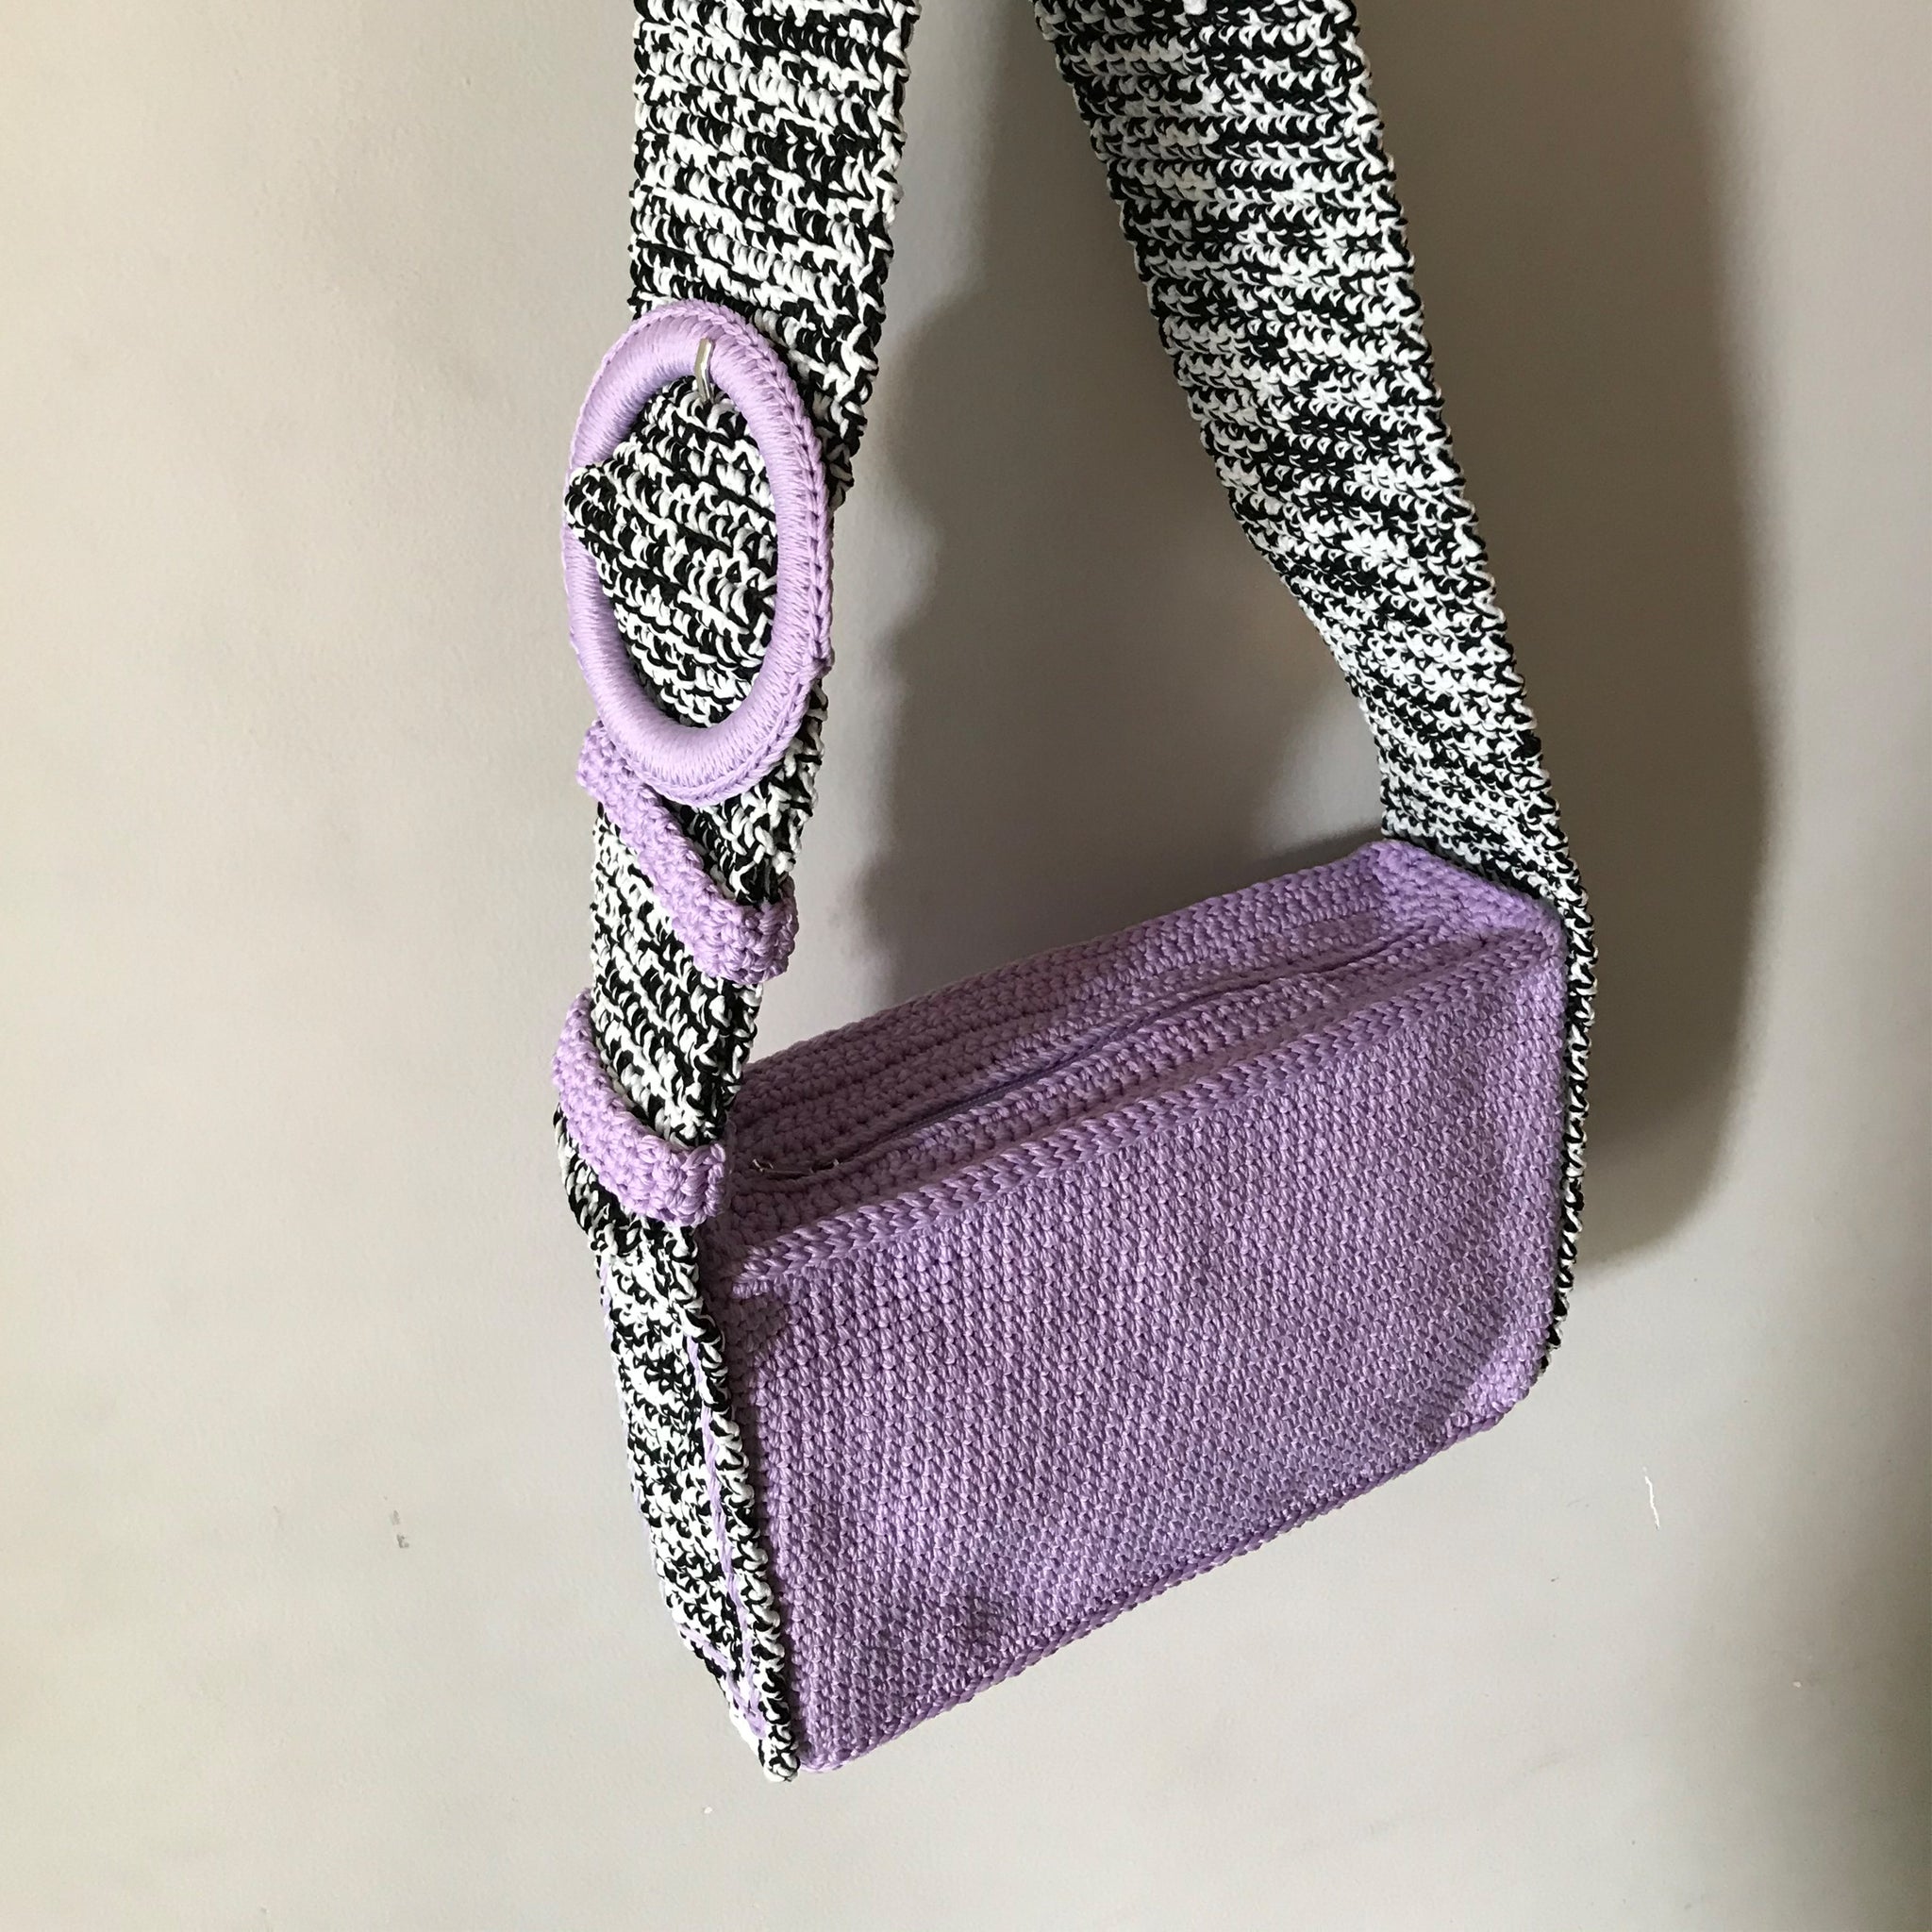 The Lilac Oreo Mini Brick Bag